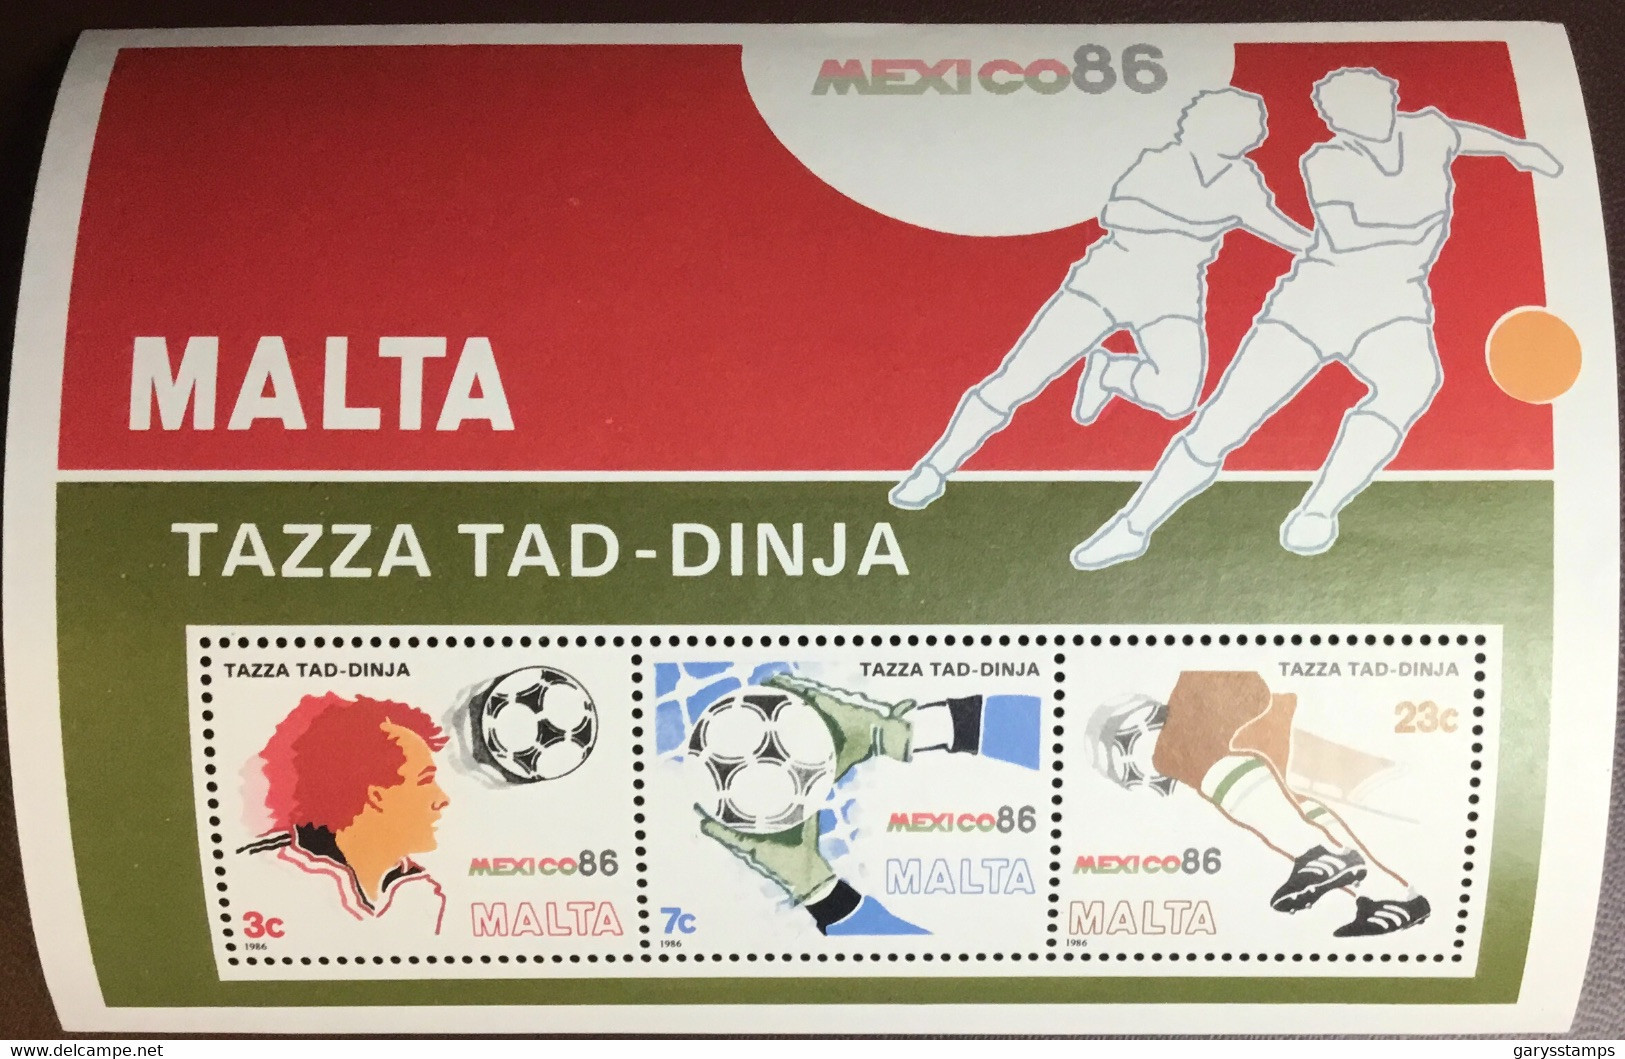 Malta 1986 World Cup Minisheet MNH - Malta